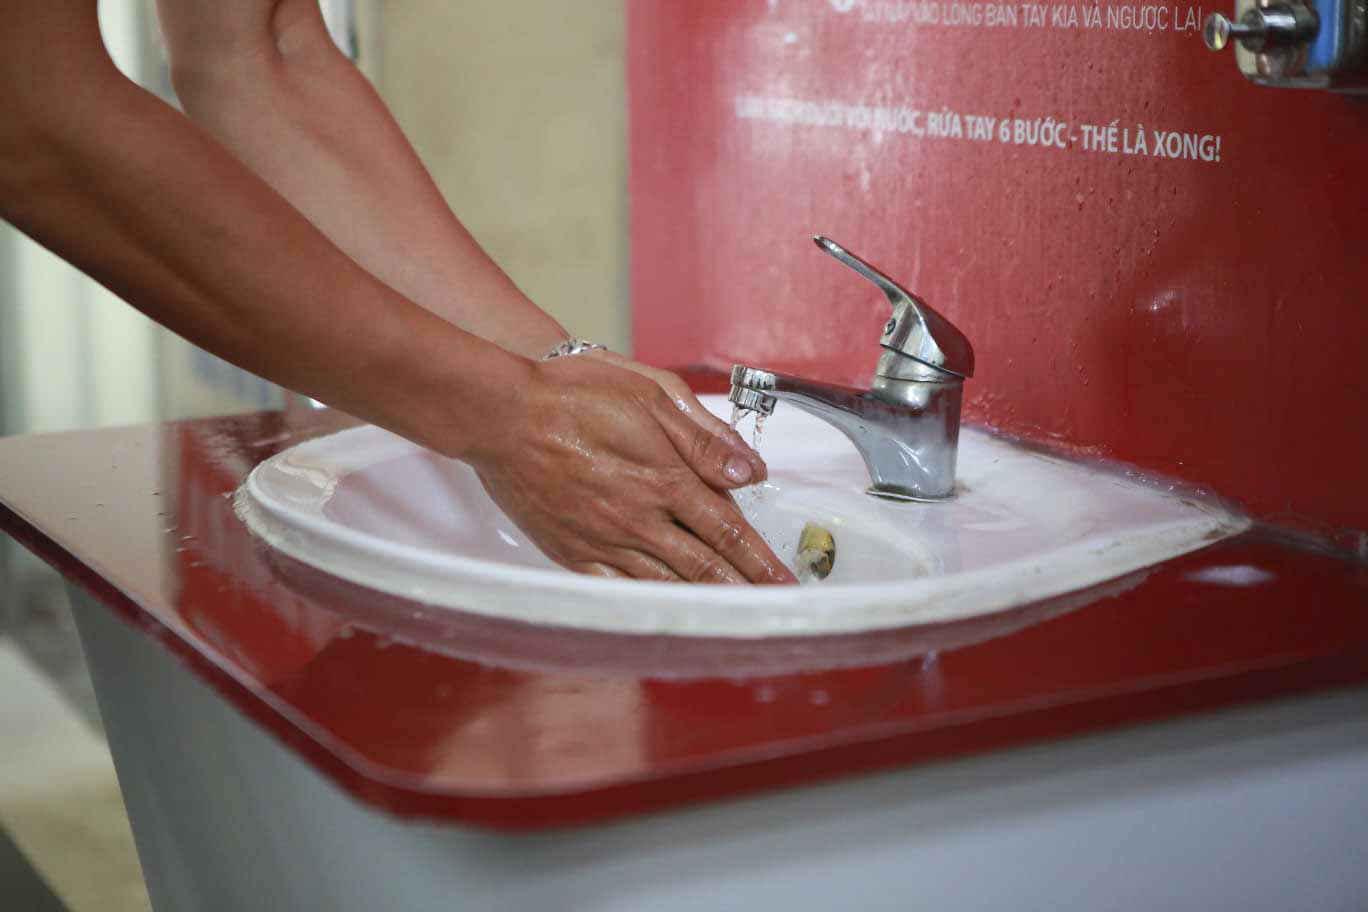 Lắp đặt trạm rửa tay dã chiến ở Hà Nội để phòng, chống dịch Covid-19 - Ảnh 4.